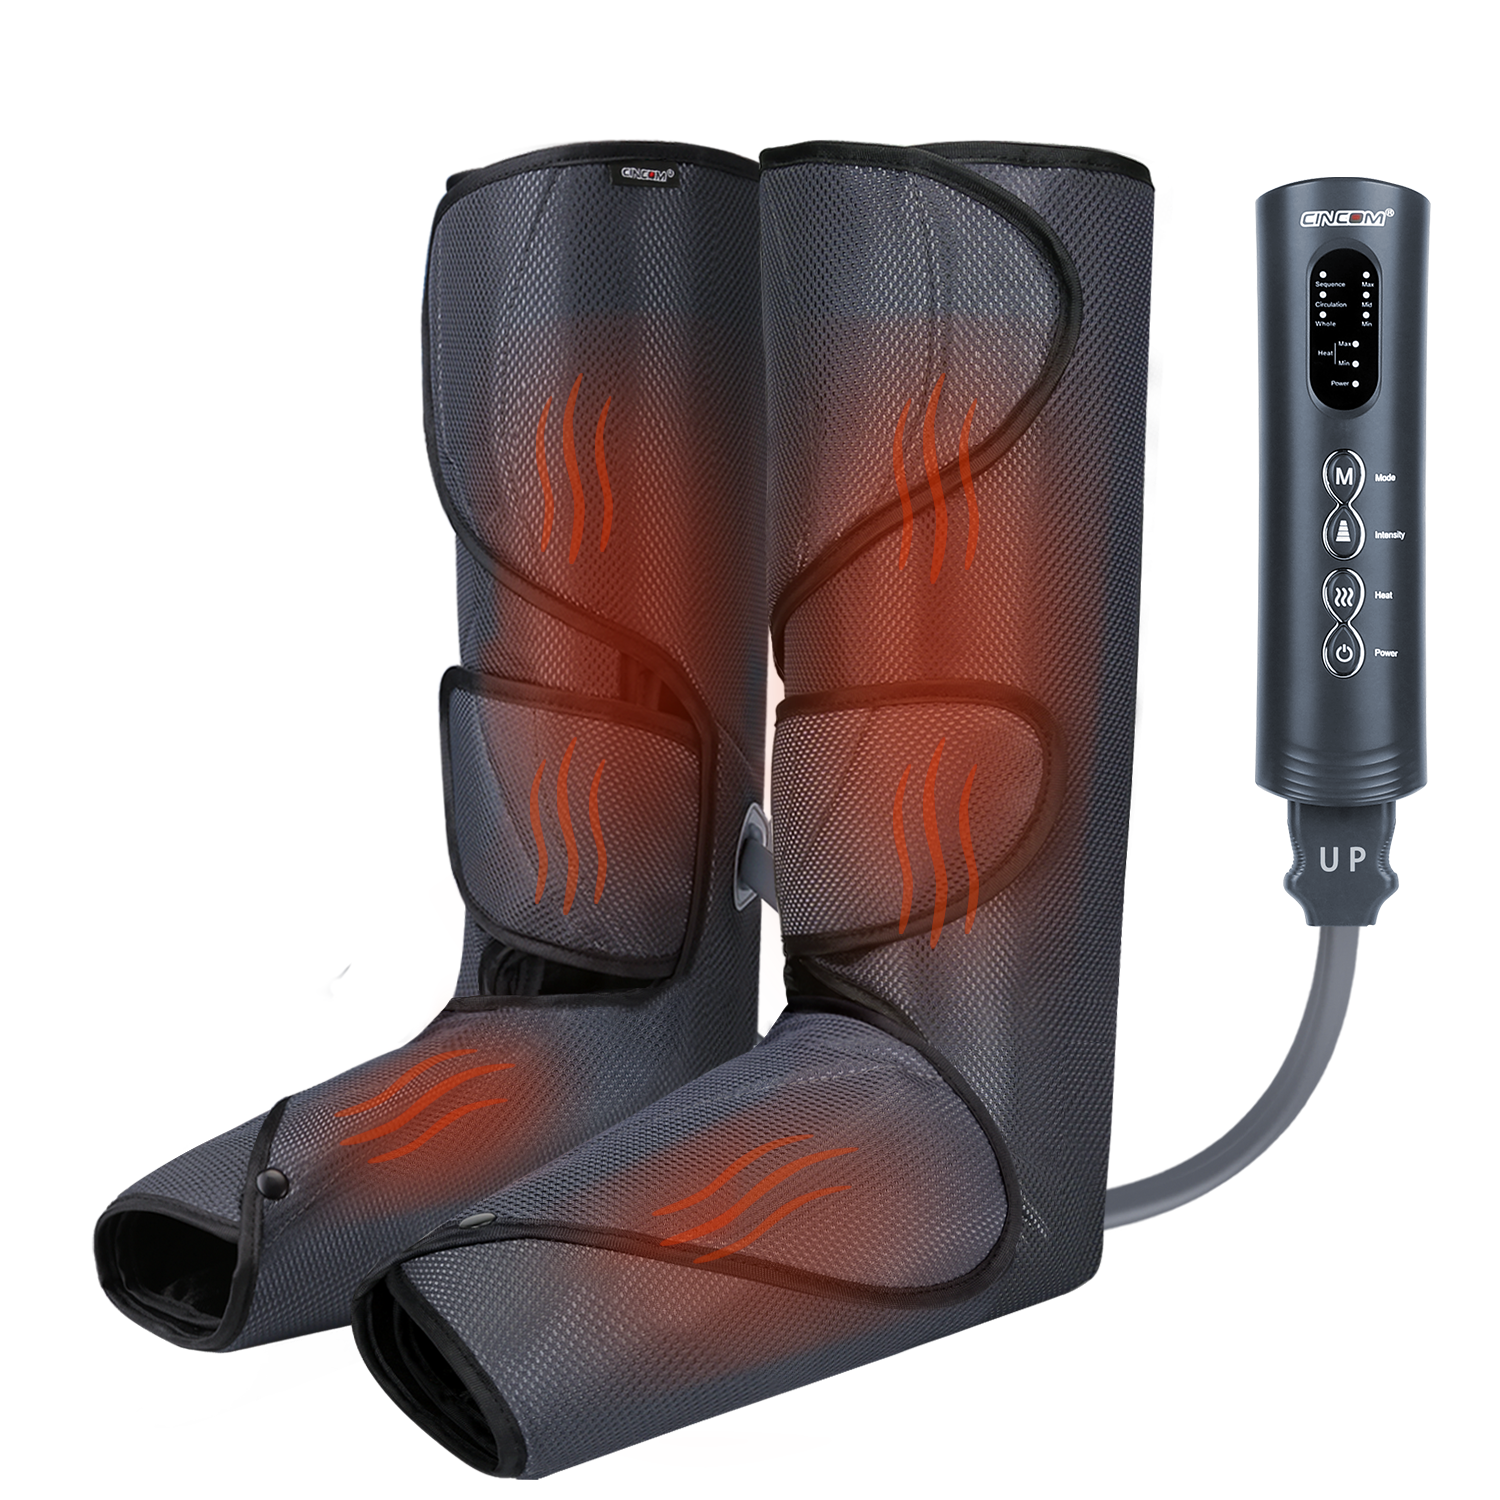 Get Relief with CINCOM's Best Knee Massager - Heated Comfort